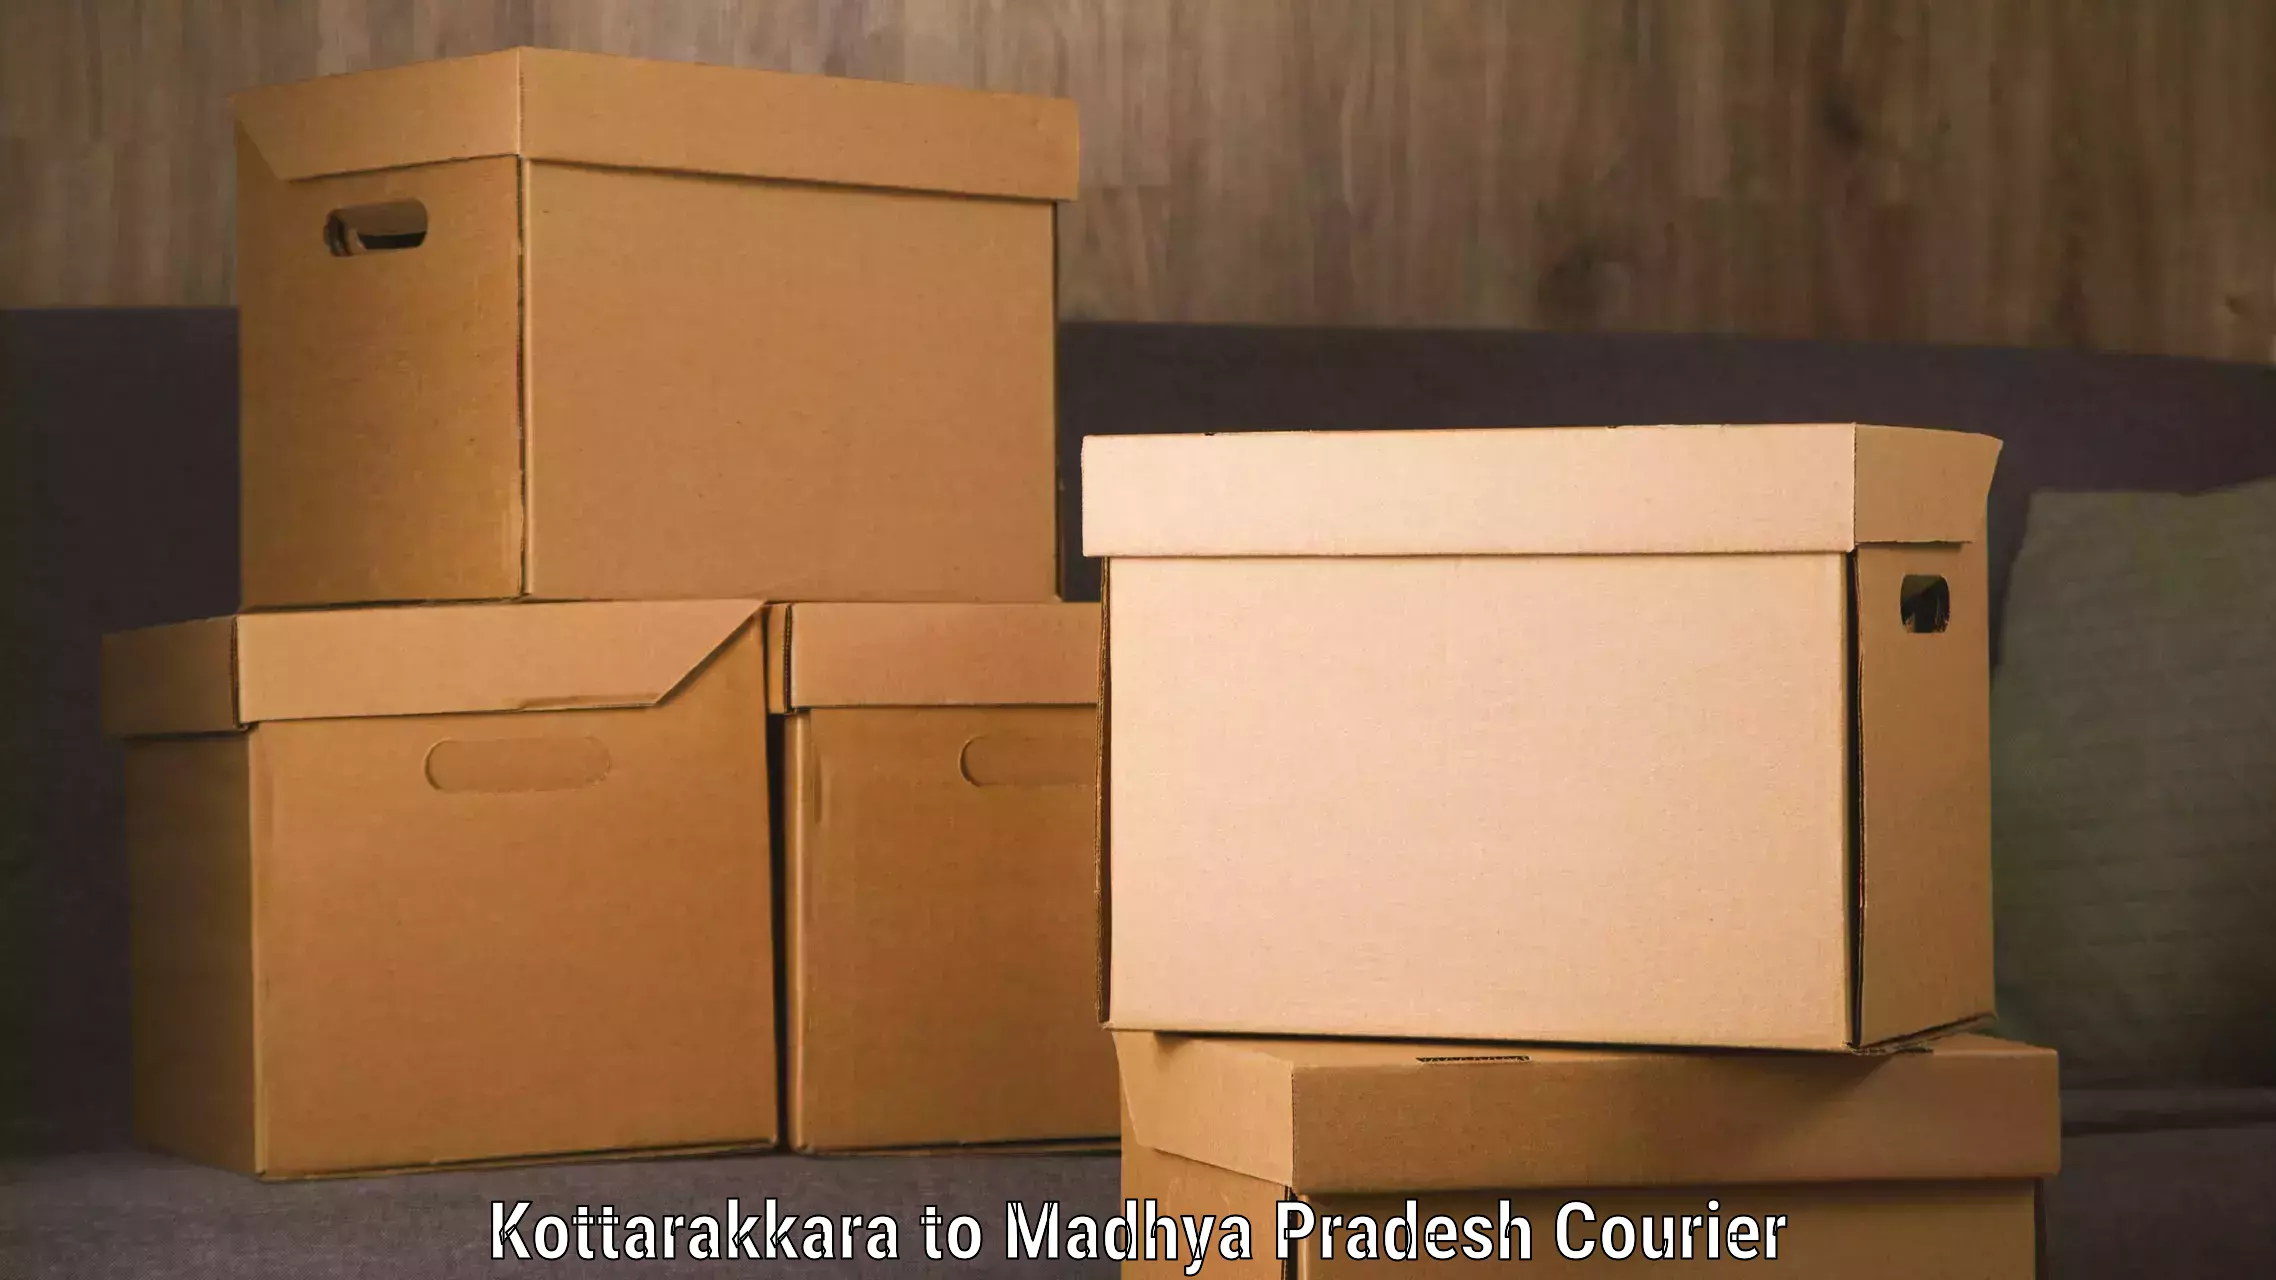 Express logistics service Kottarakkara to Shahpura Dindori